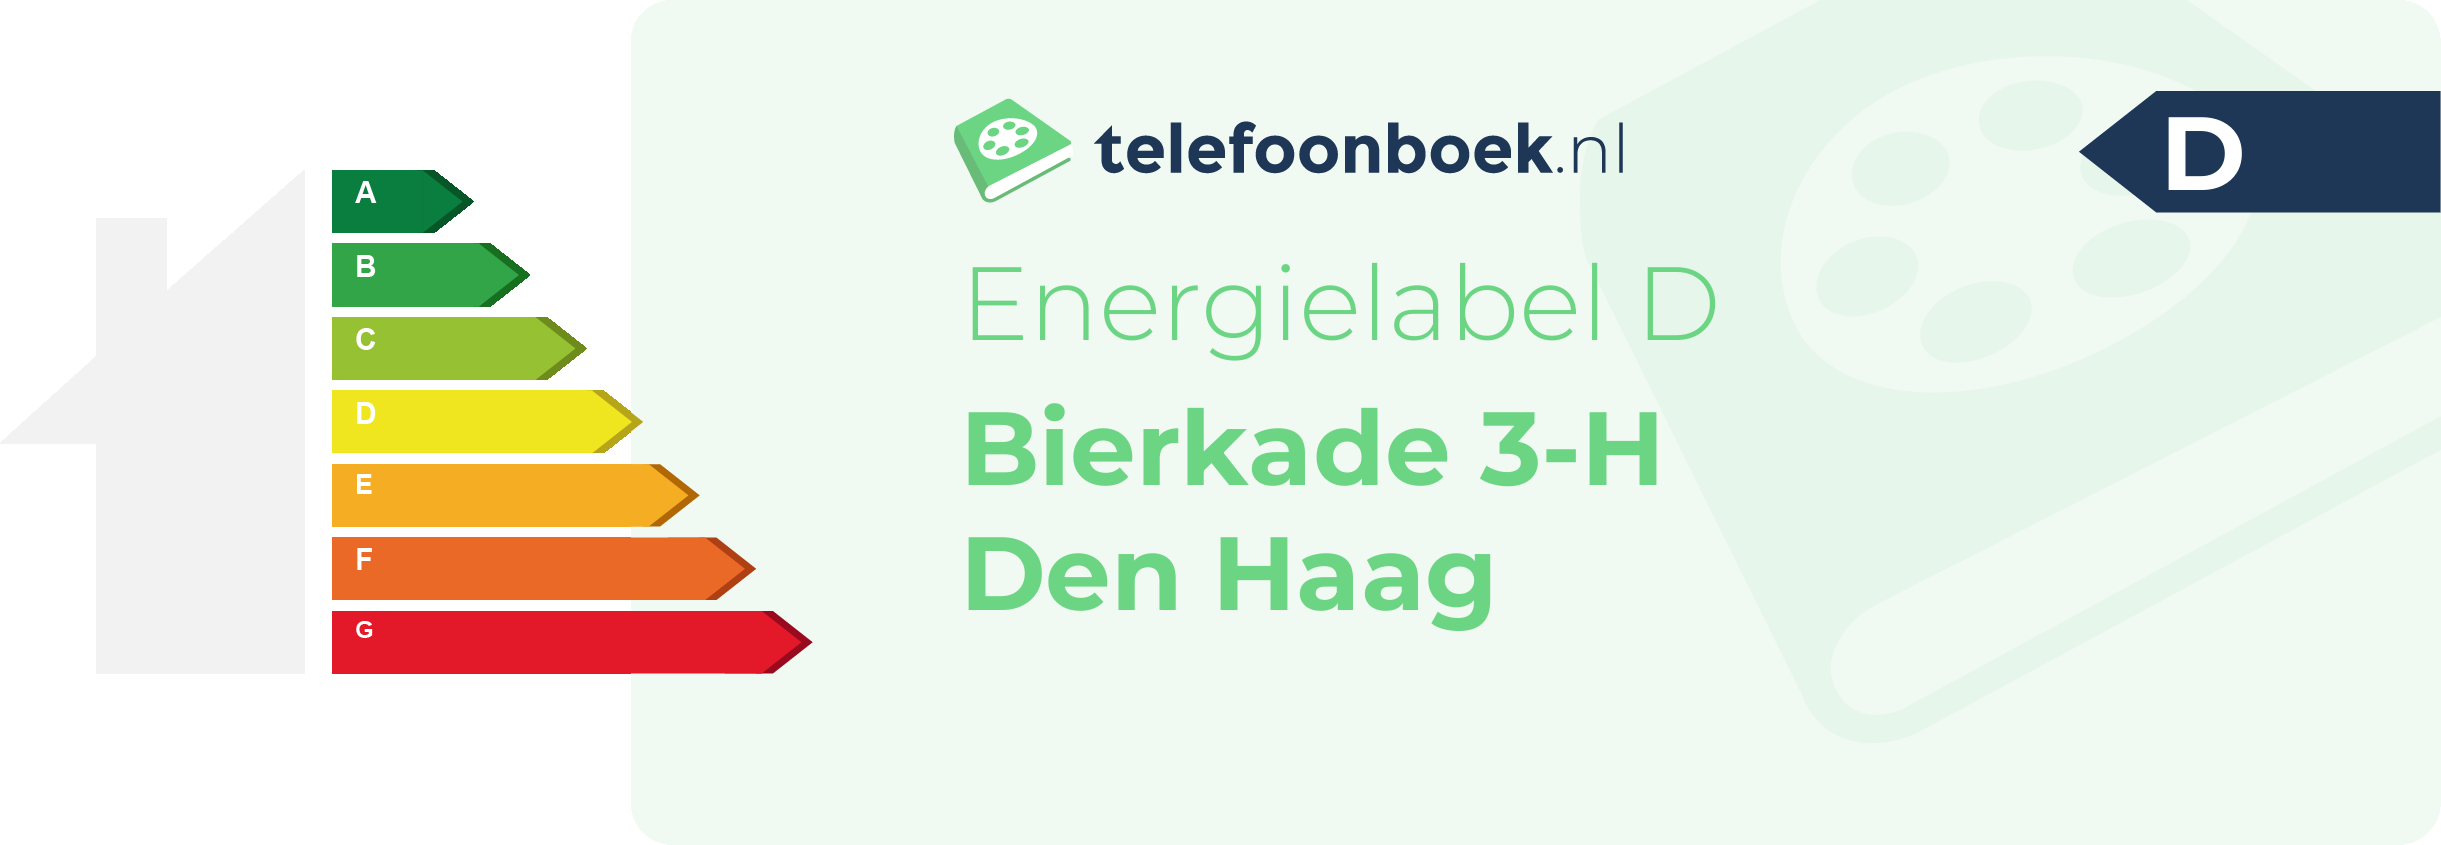 Energielabel Bierkade 3-H Den Haag